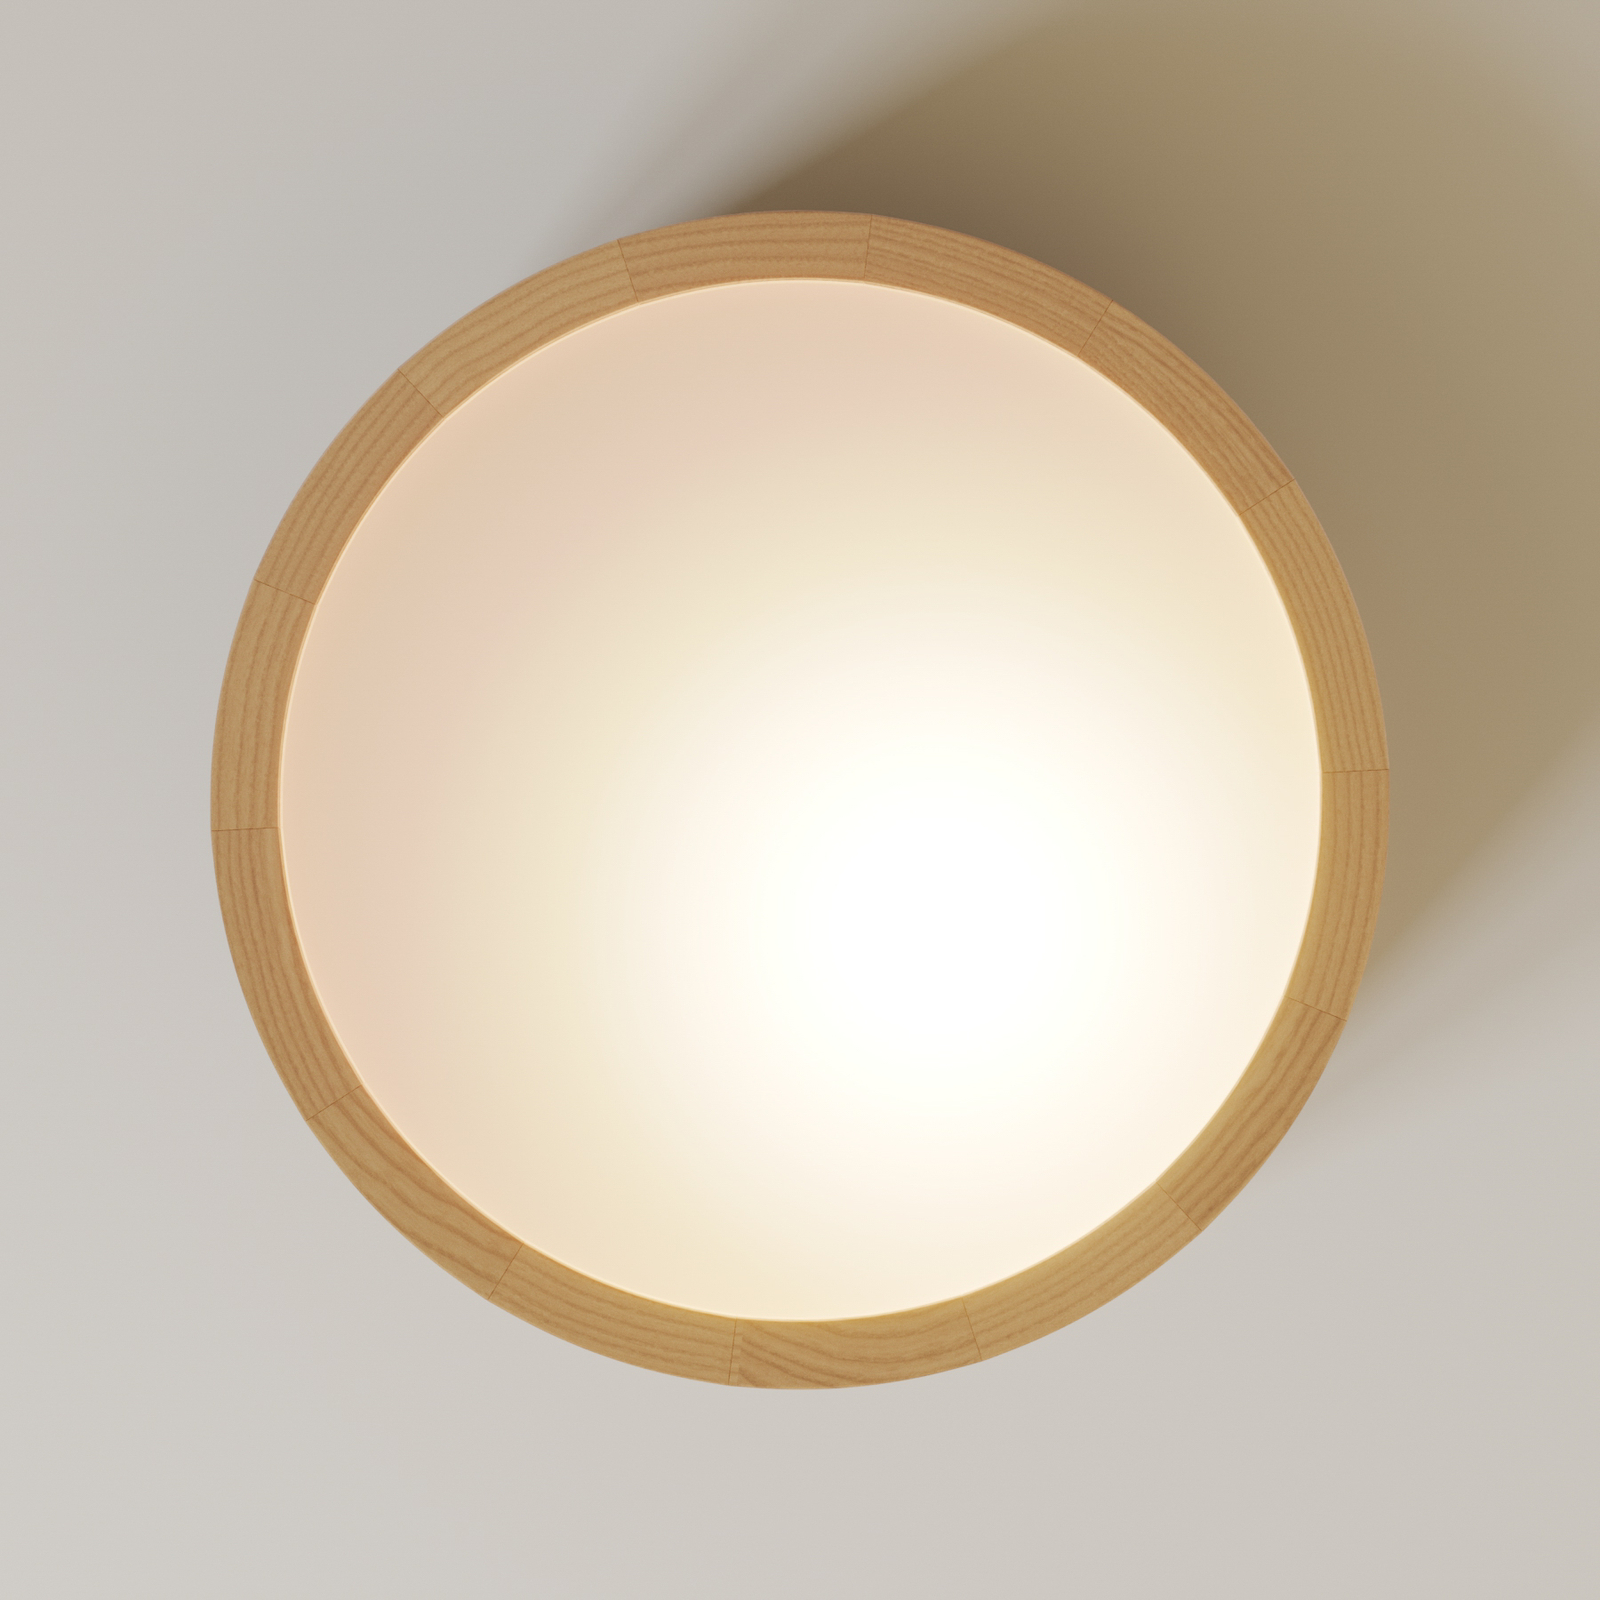 Envostar Kerio stropní světlo, Ø 27 cm, bílá